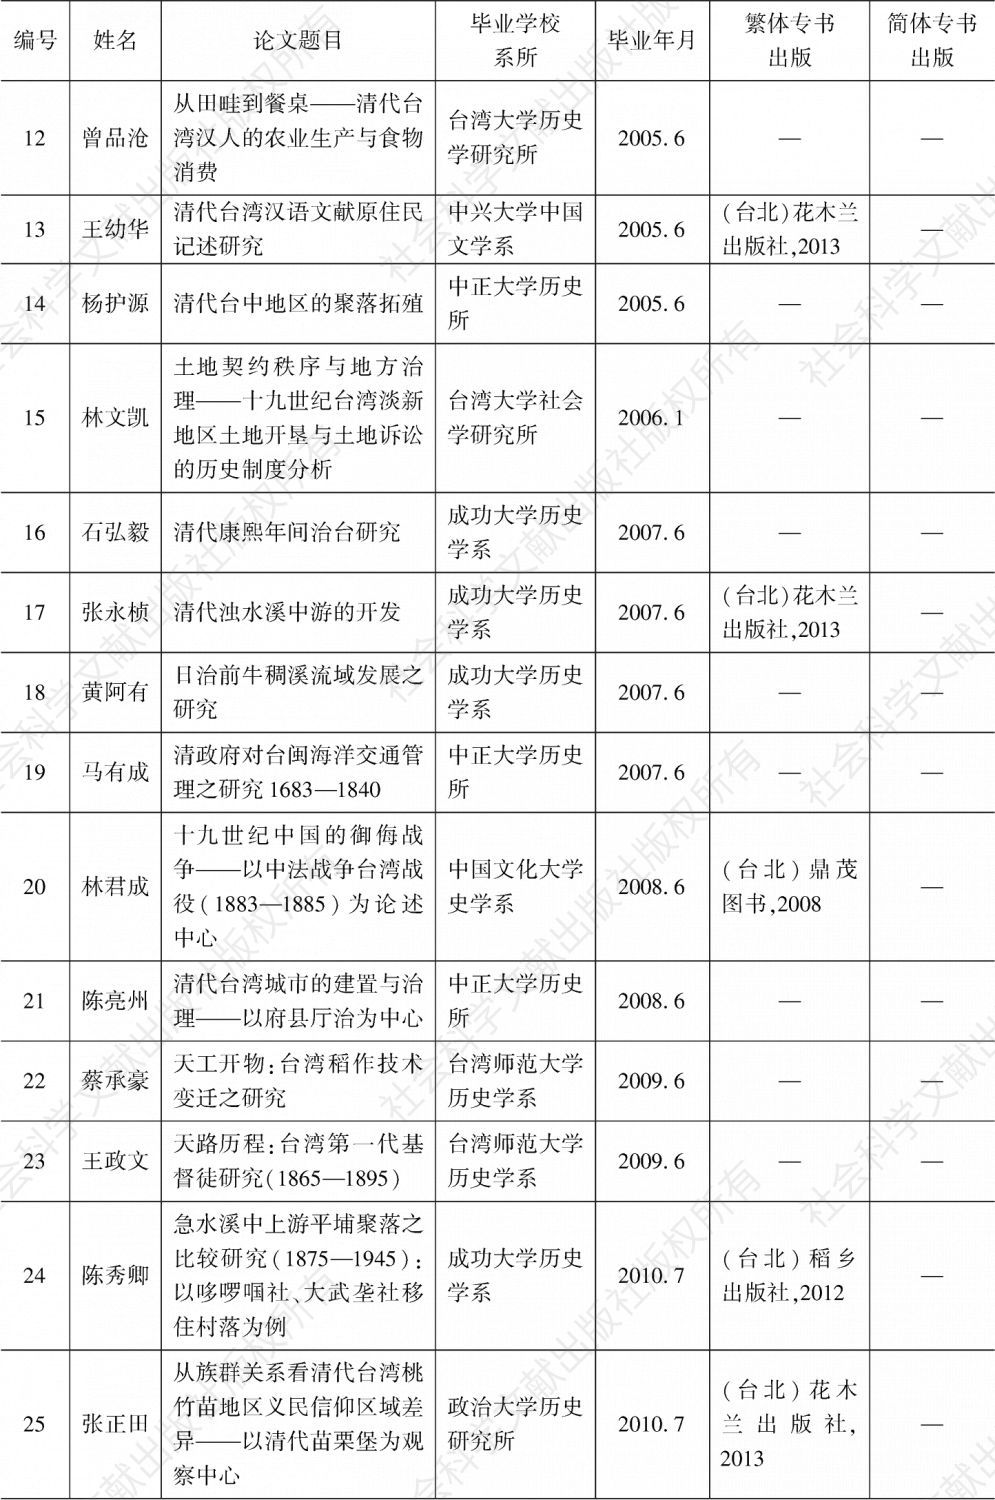 附表 2000—2017年台湾各公私立大学对于清代台湾历史、文学与文化研究博士学位论文一览-续表1